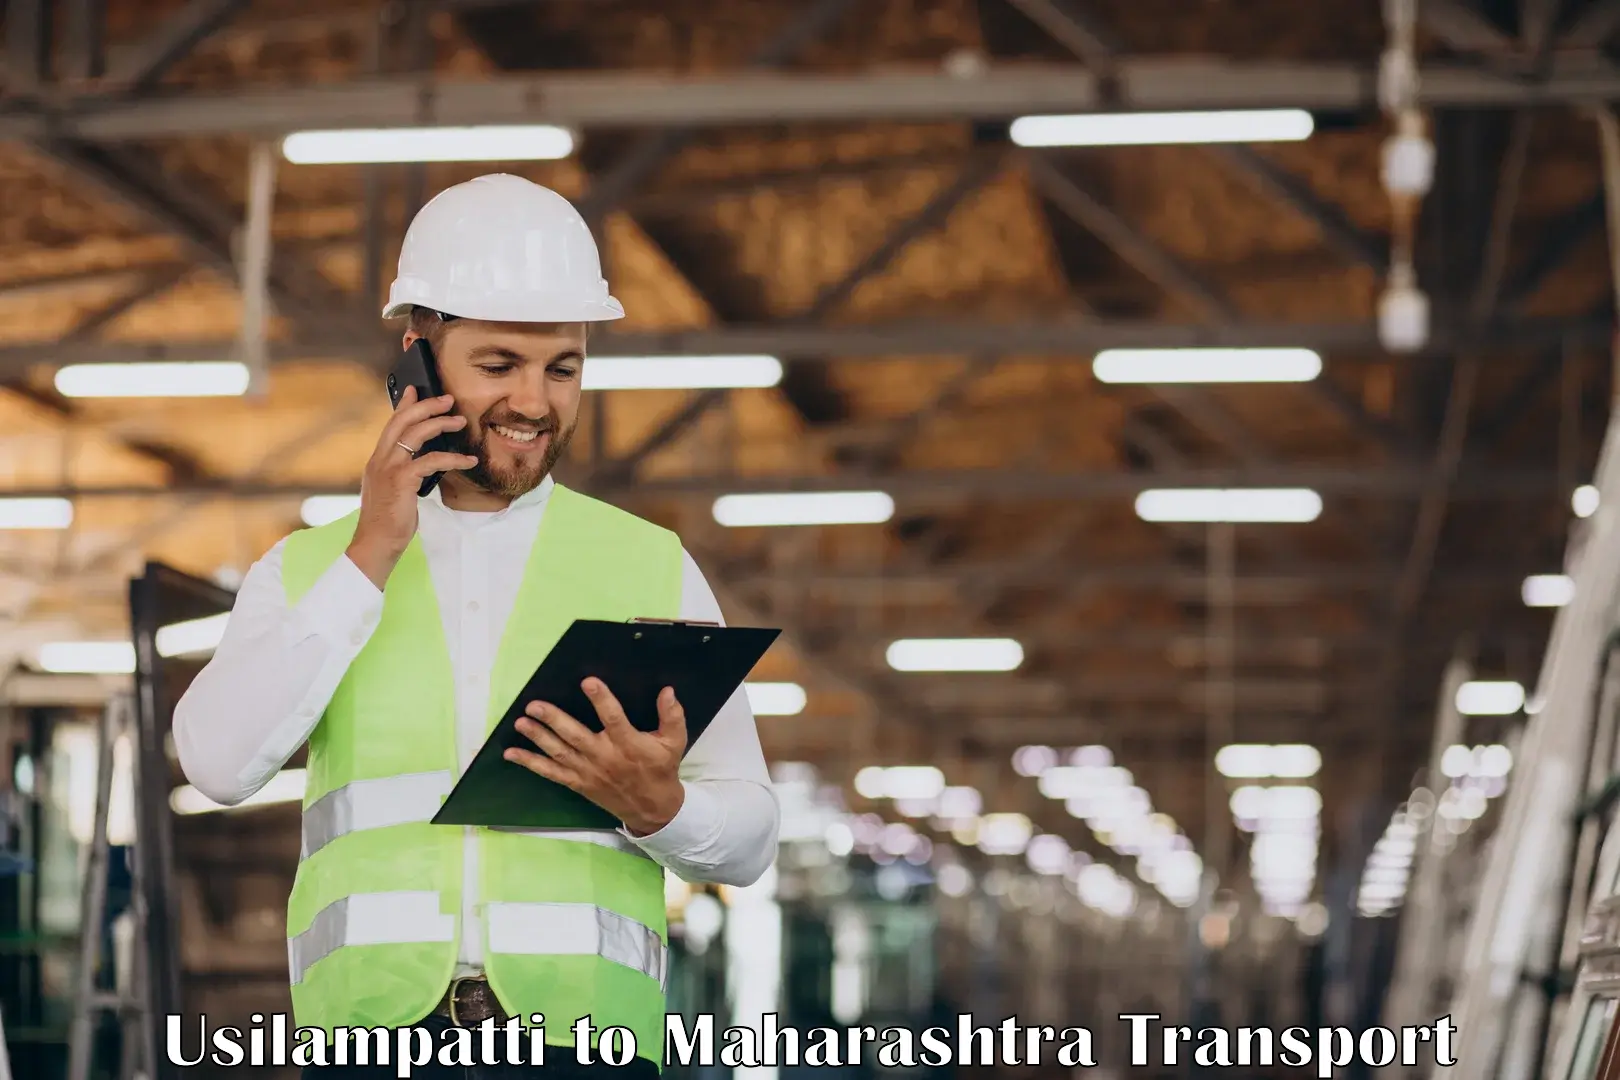 Goods delivery service Usilampatti to Raigarh Maharashtra